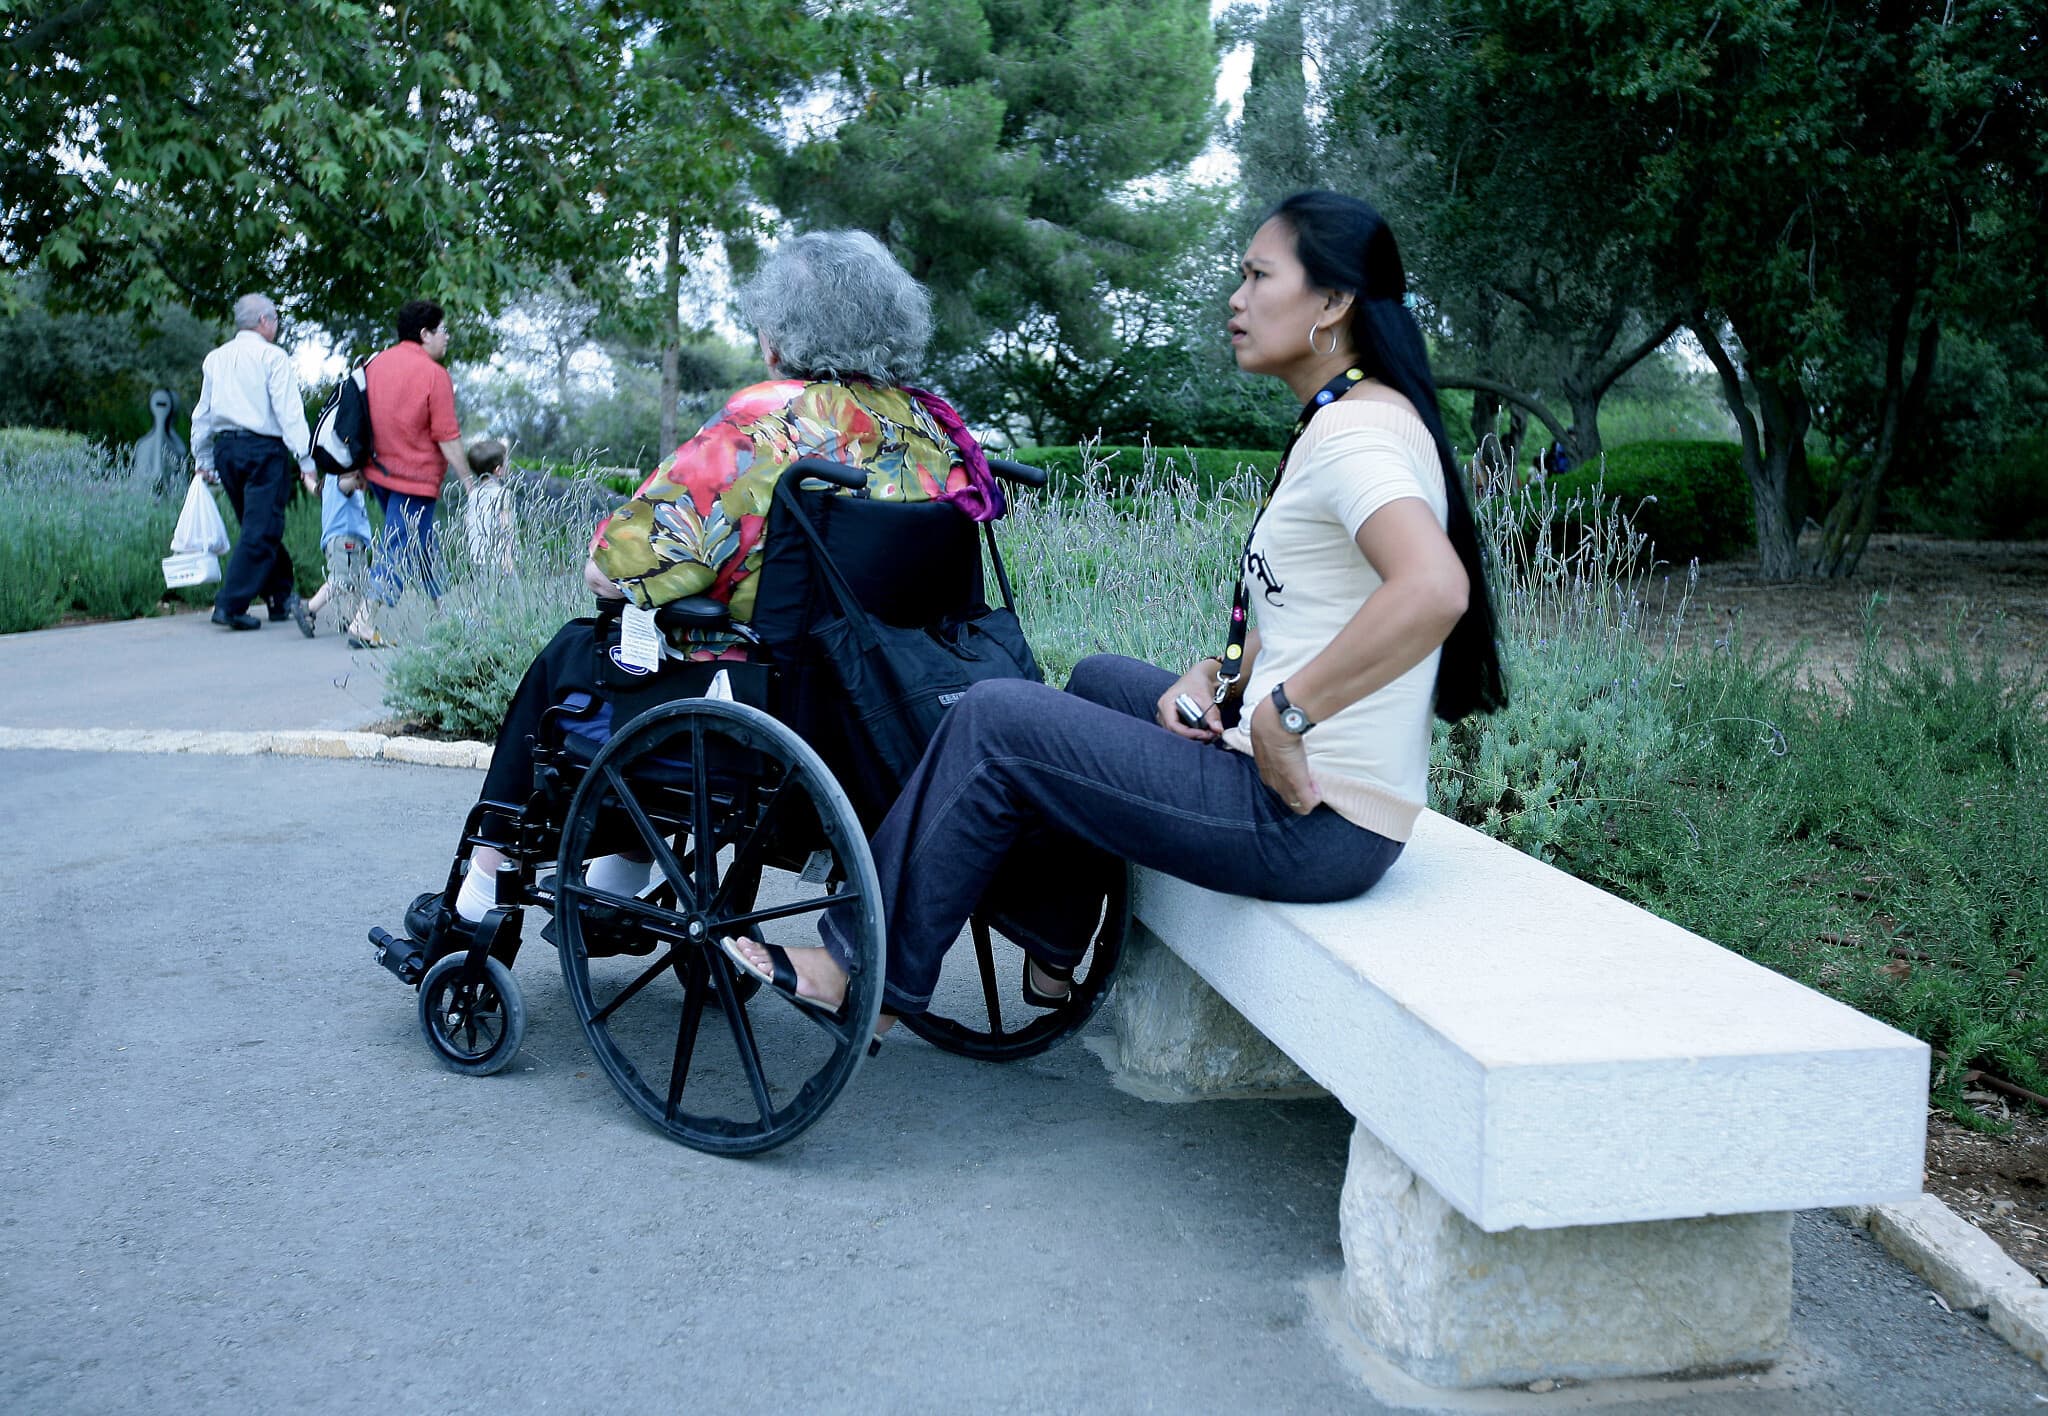 מטפלת סיעודית עם קשישה בפארק הירקון. למצולמים אין קשר לנאמר בכתבה (צילום: משה שי/פלאש90)